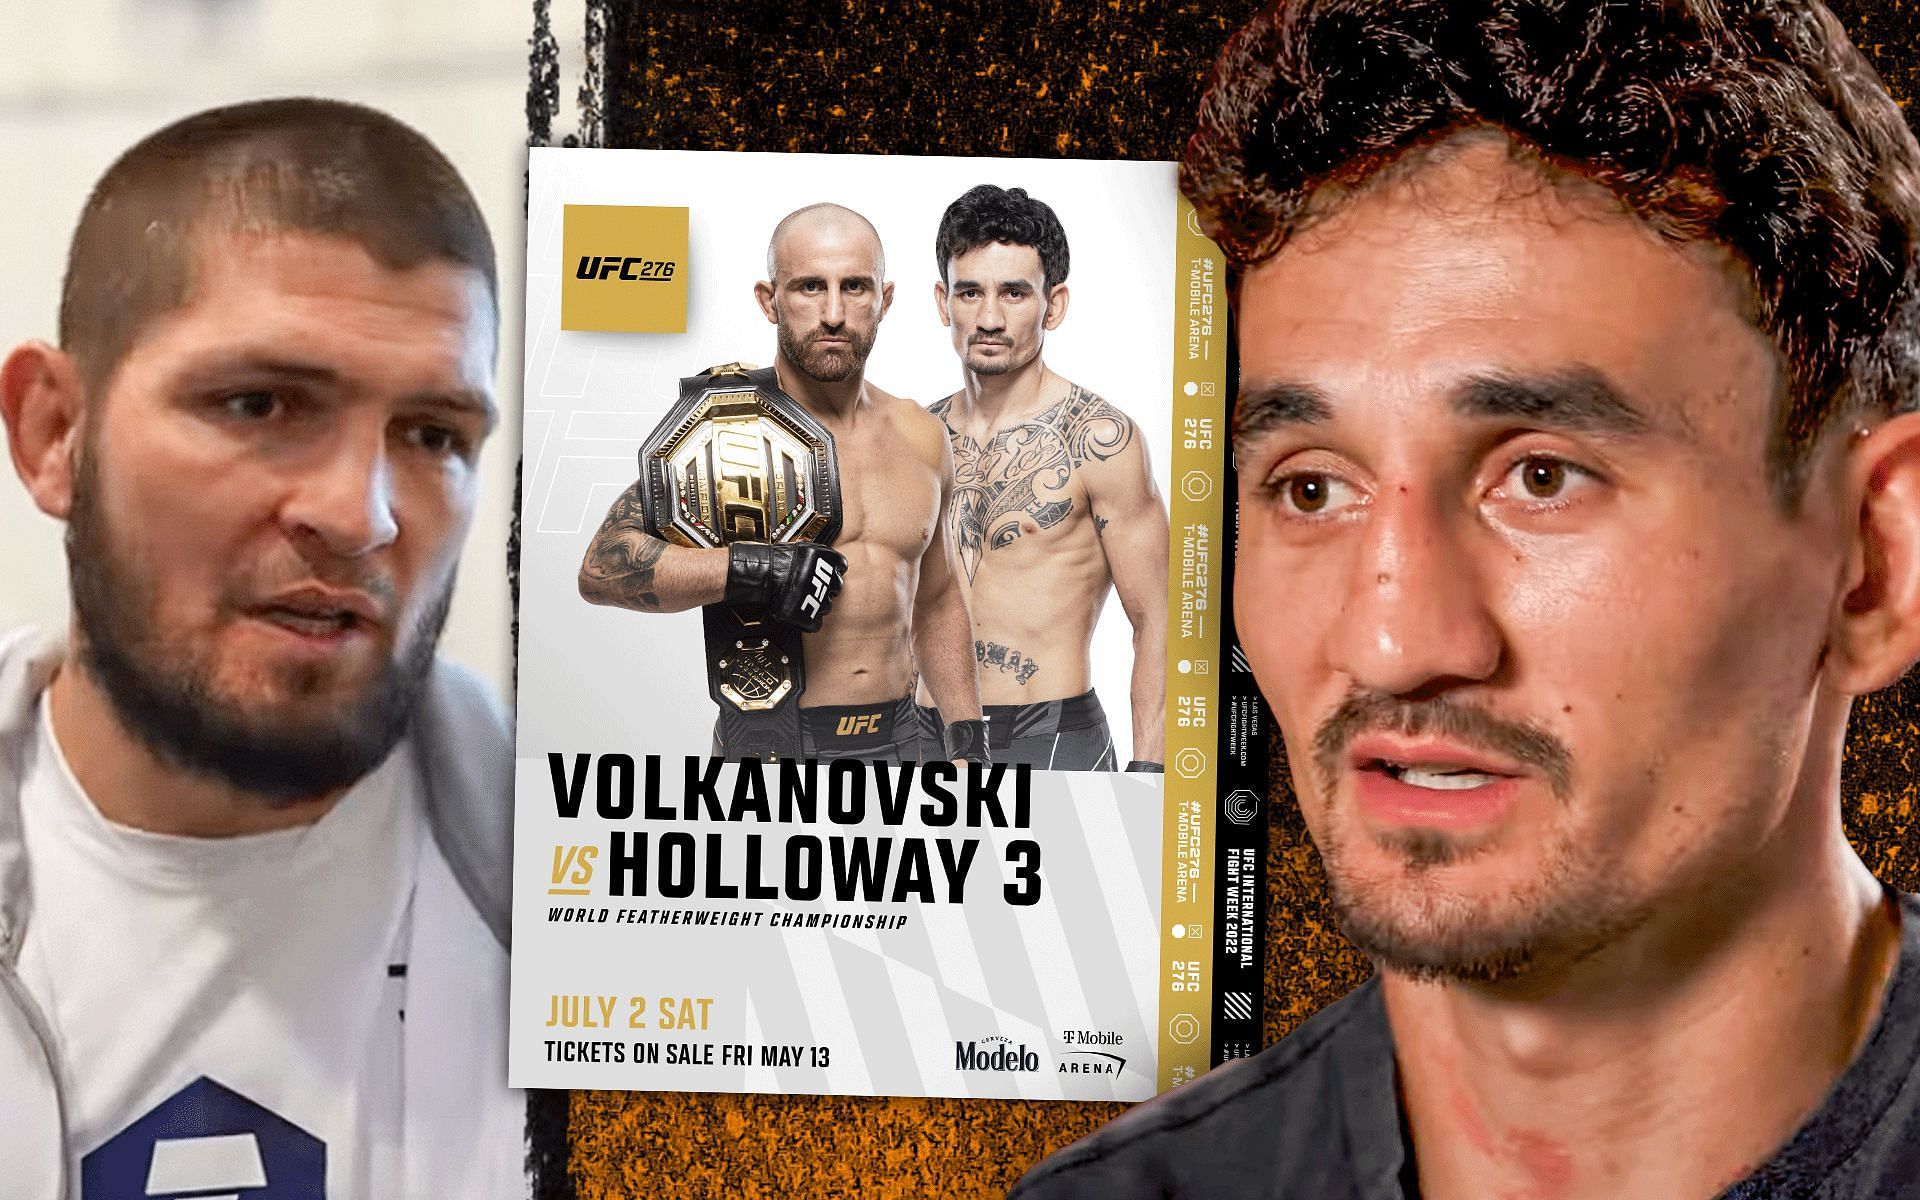 (L to R) Khabib Nurmagomedov, Max Holloway vs. Alexander Volkanovski poster (via @ufc on Instagram), Max Holloway (via @UFC on YouTube)